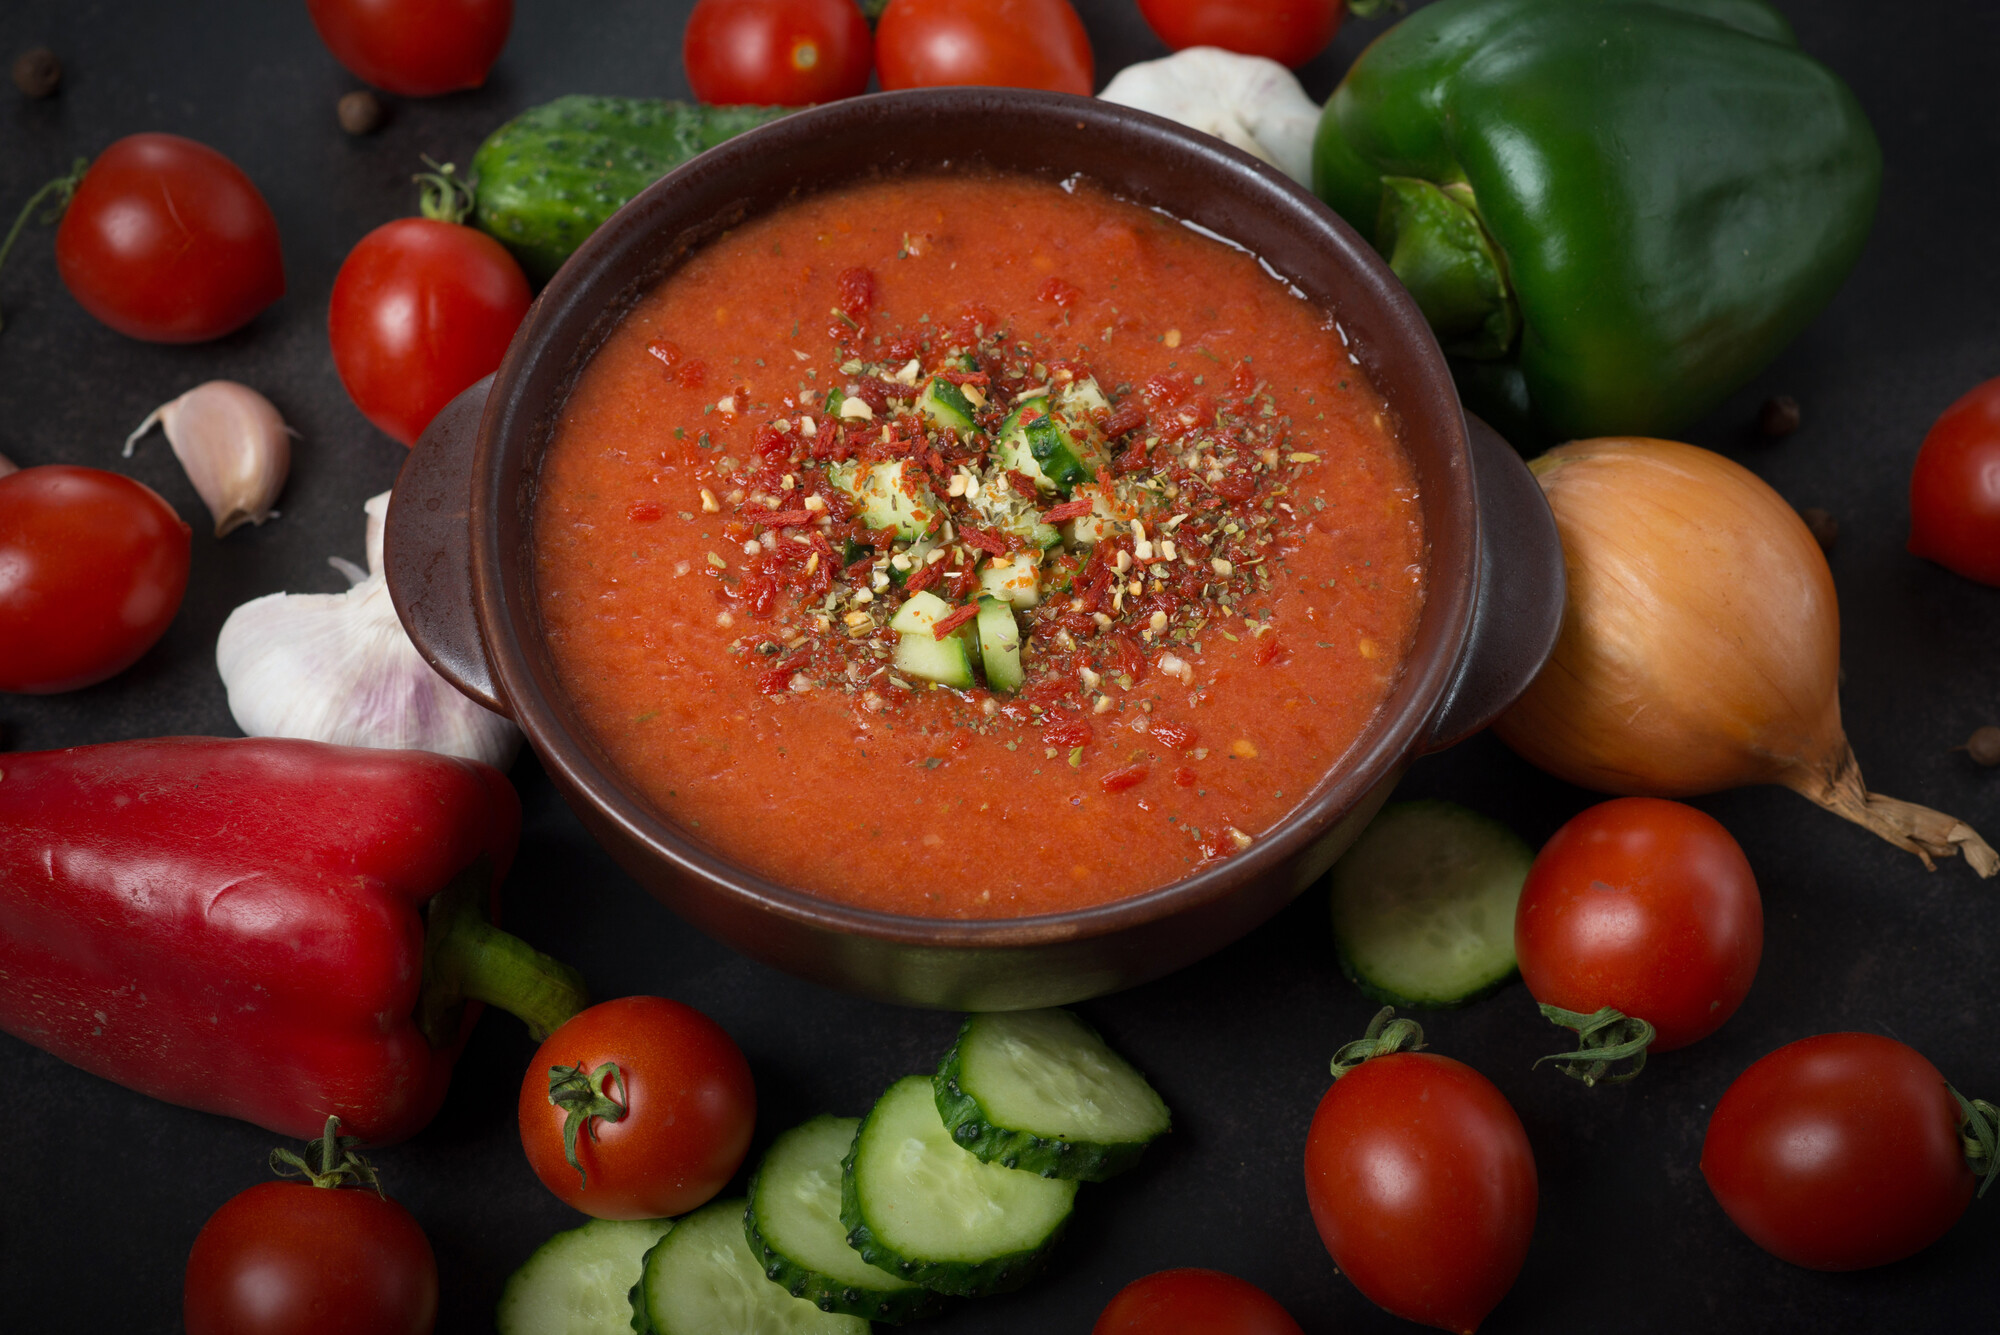 Gazpacho ist eine kalt servierte Suppe aus ungekochtem Gemüse. Sie stammt aus Andalusien und wird traditionell mit Eiswürfeln serviert, die wieder herausgenommen werden, bevor sie tauen.